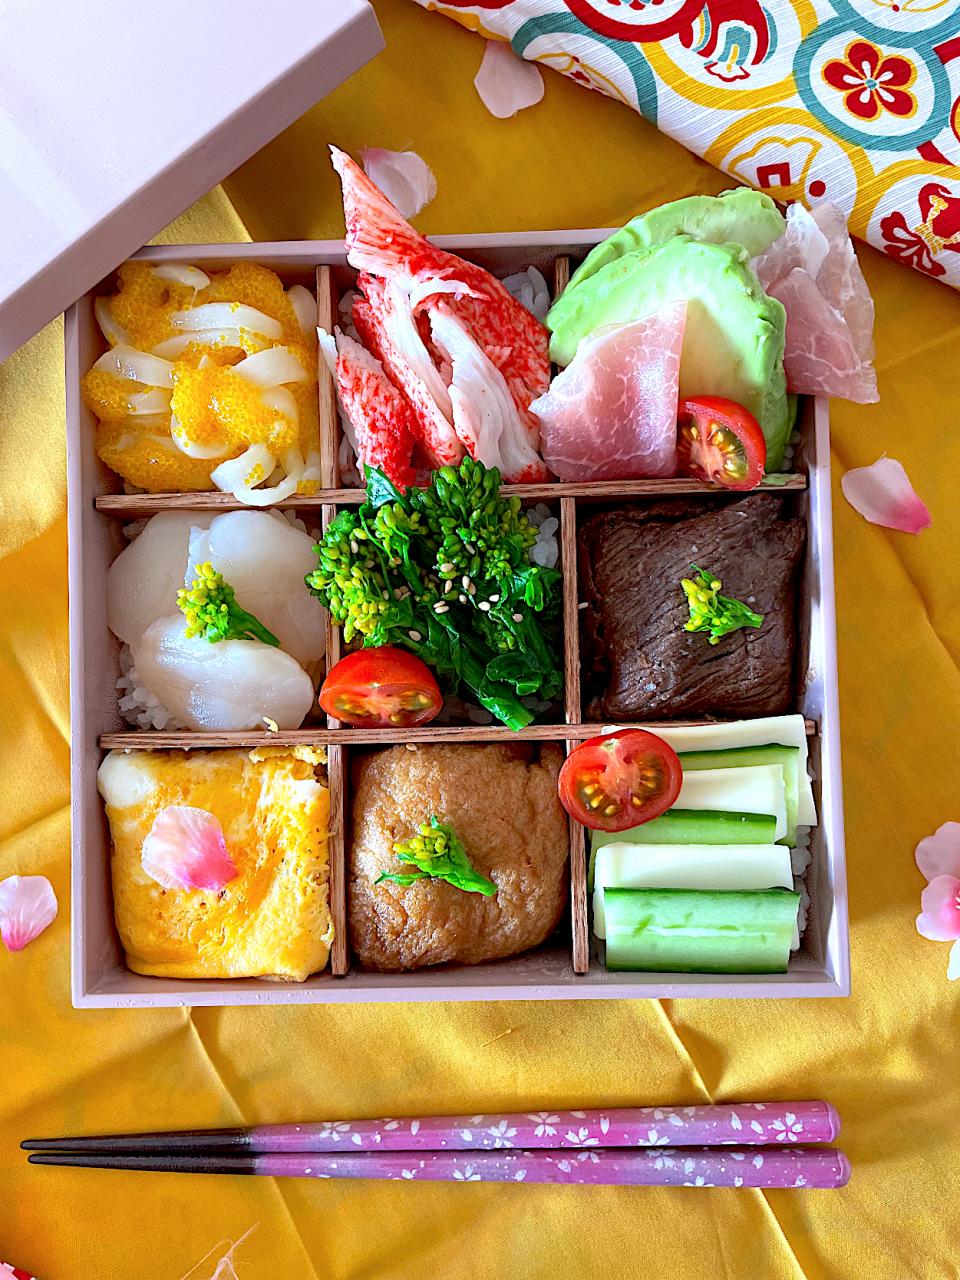 サミカさんの料理 俄か仕立てのモザイク寿司✨サミカさん❤️お誕生日おめでとうございます🎂🎉